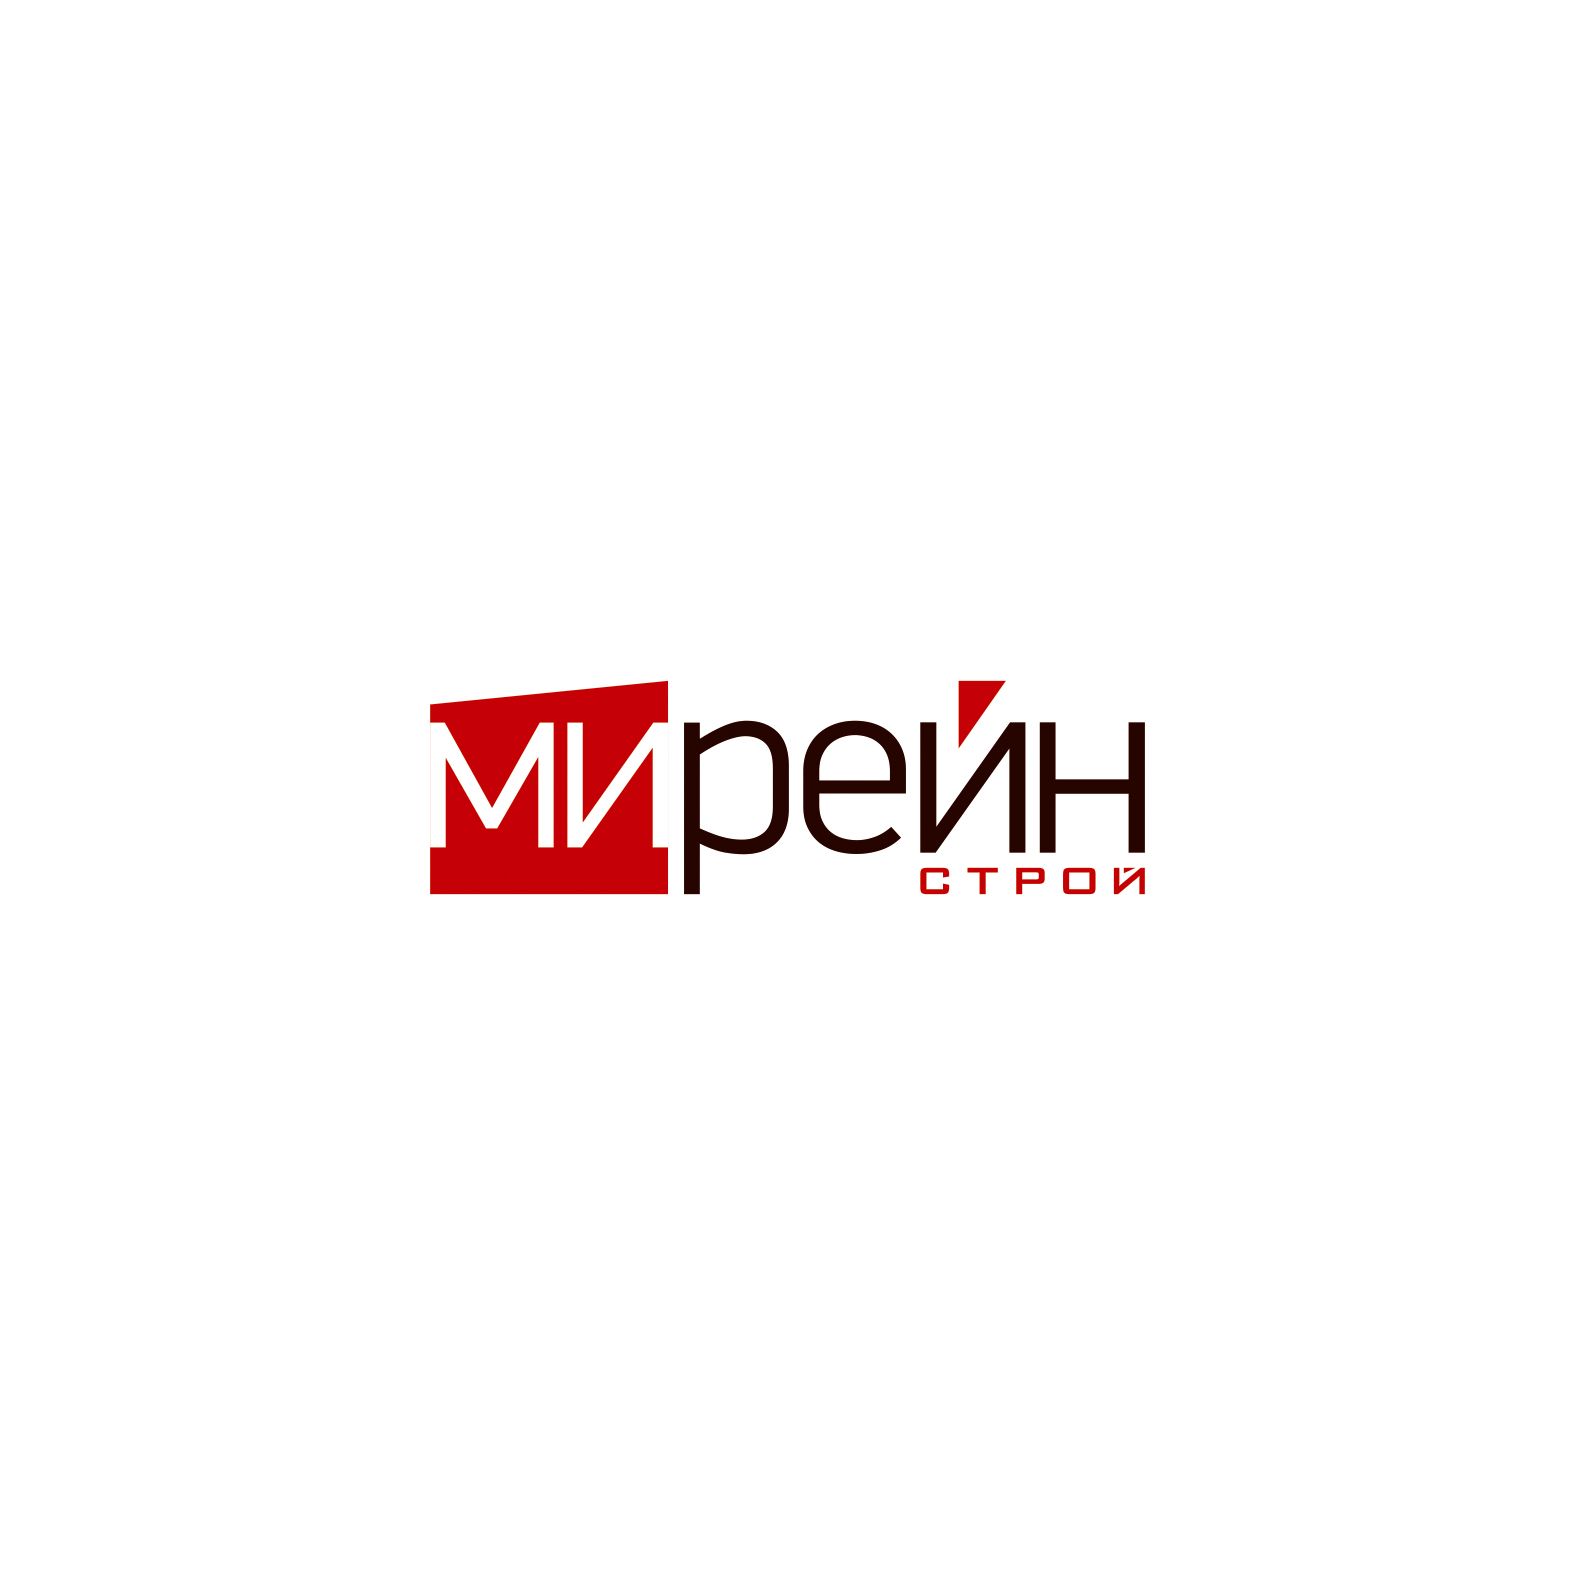 Логотип для группы компаний Мирейн - дизайнер artmixen